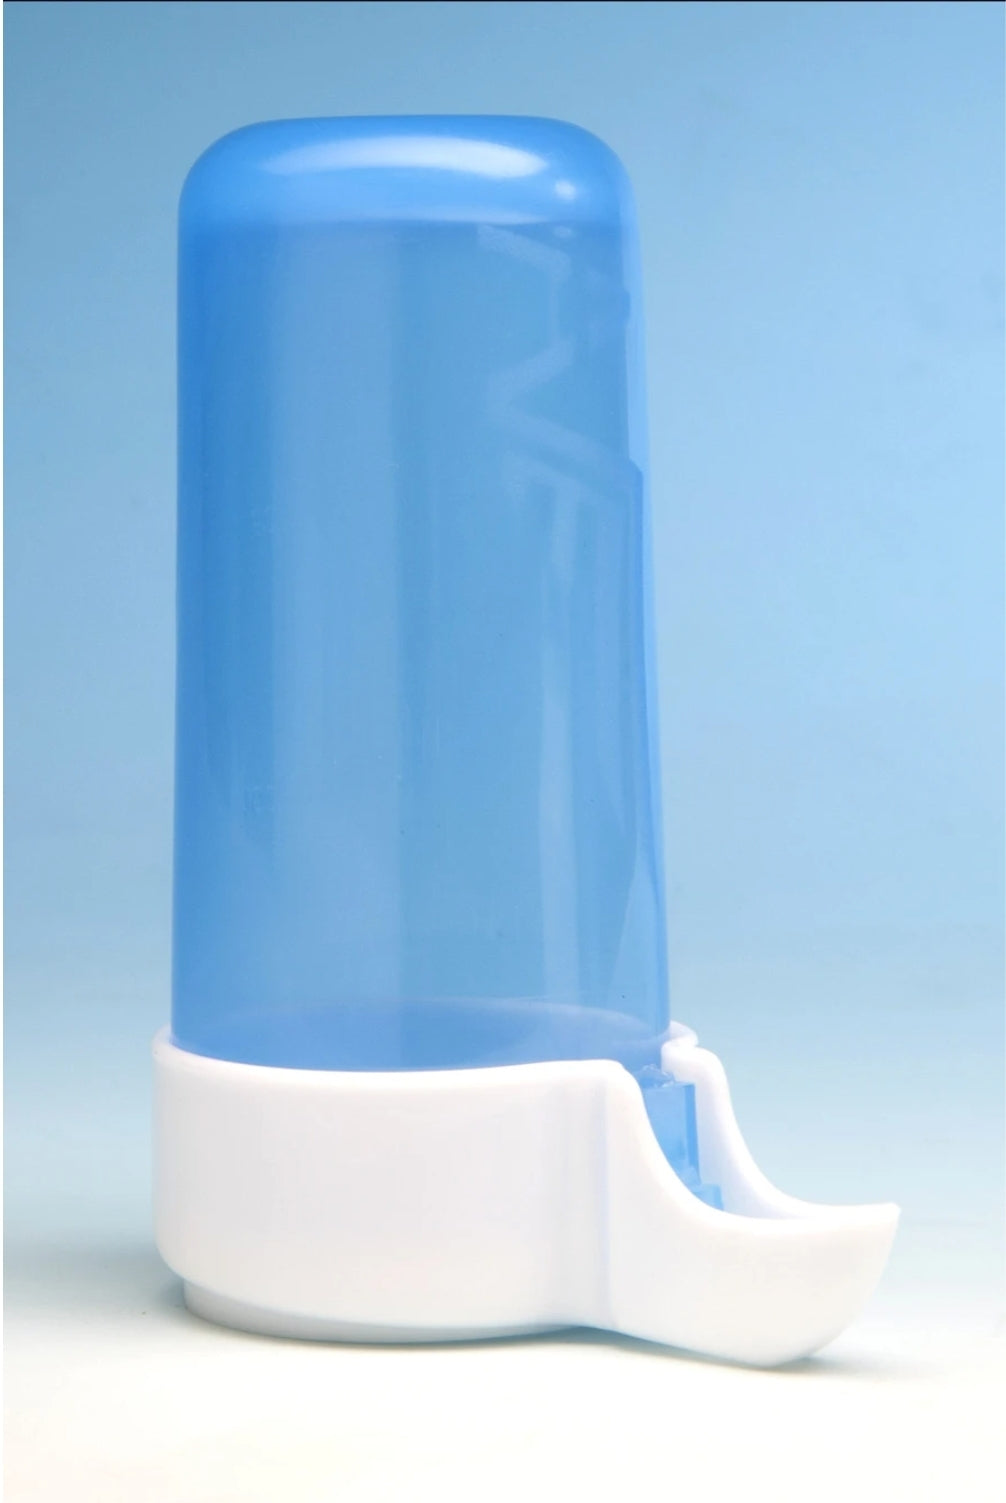 Drink fontein ( blauw ) anti-verspilling systeem 170ml